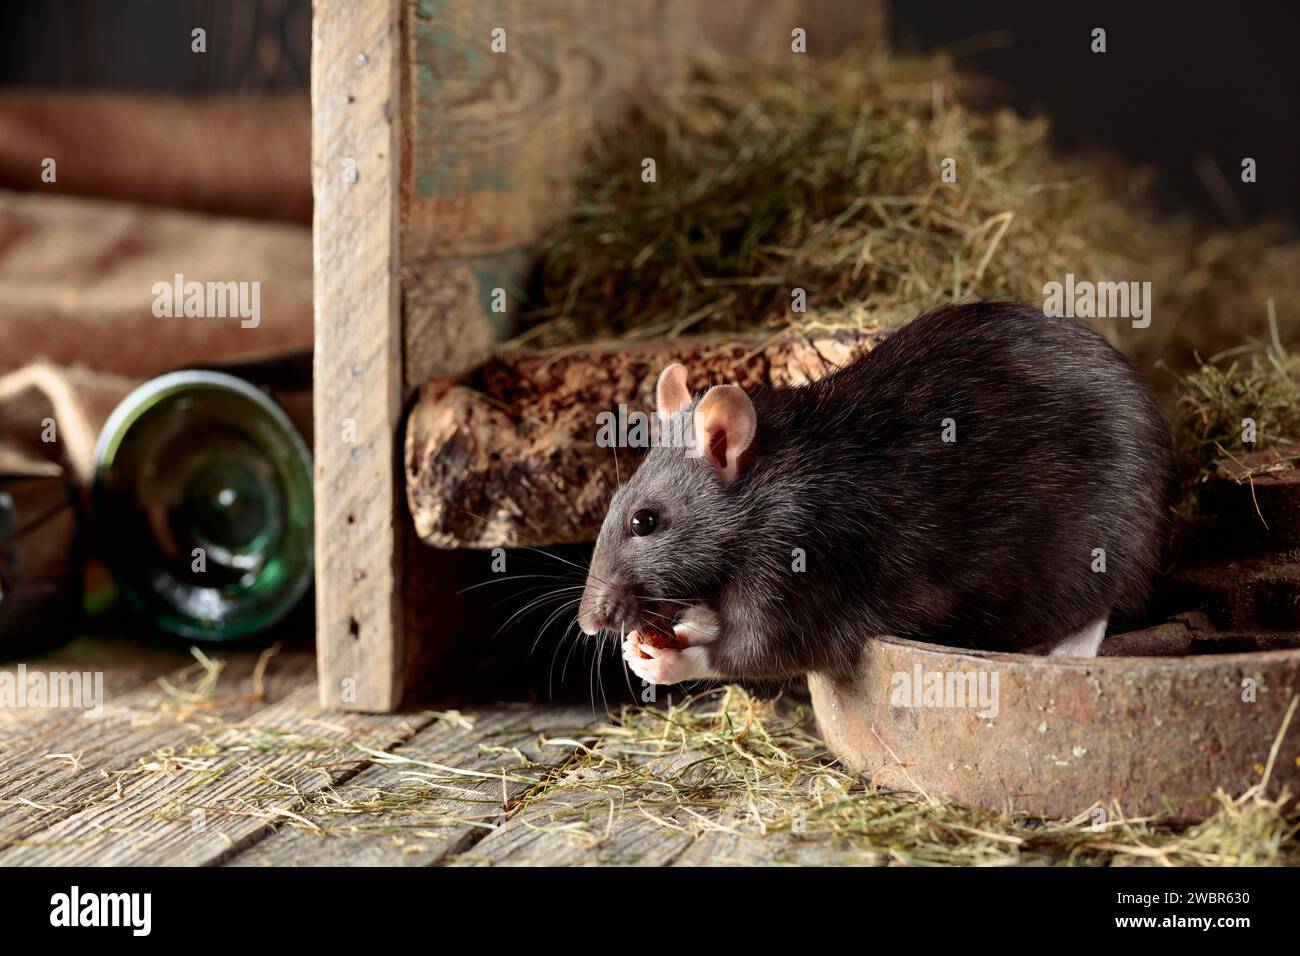 Niedliche Ratte in einer alten Holzscheune mit Heu. Stockfoto